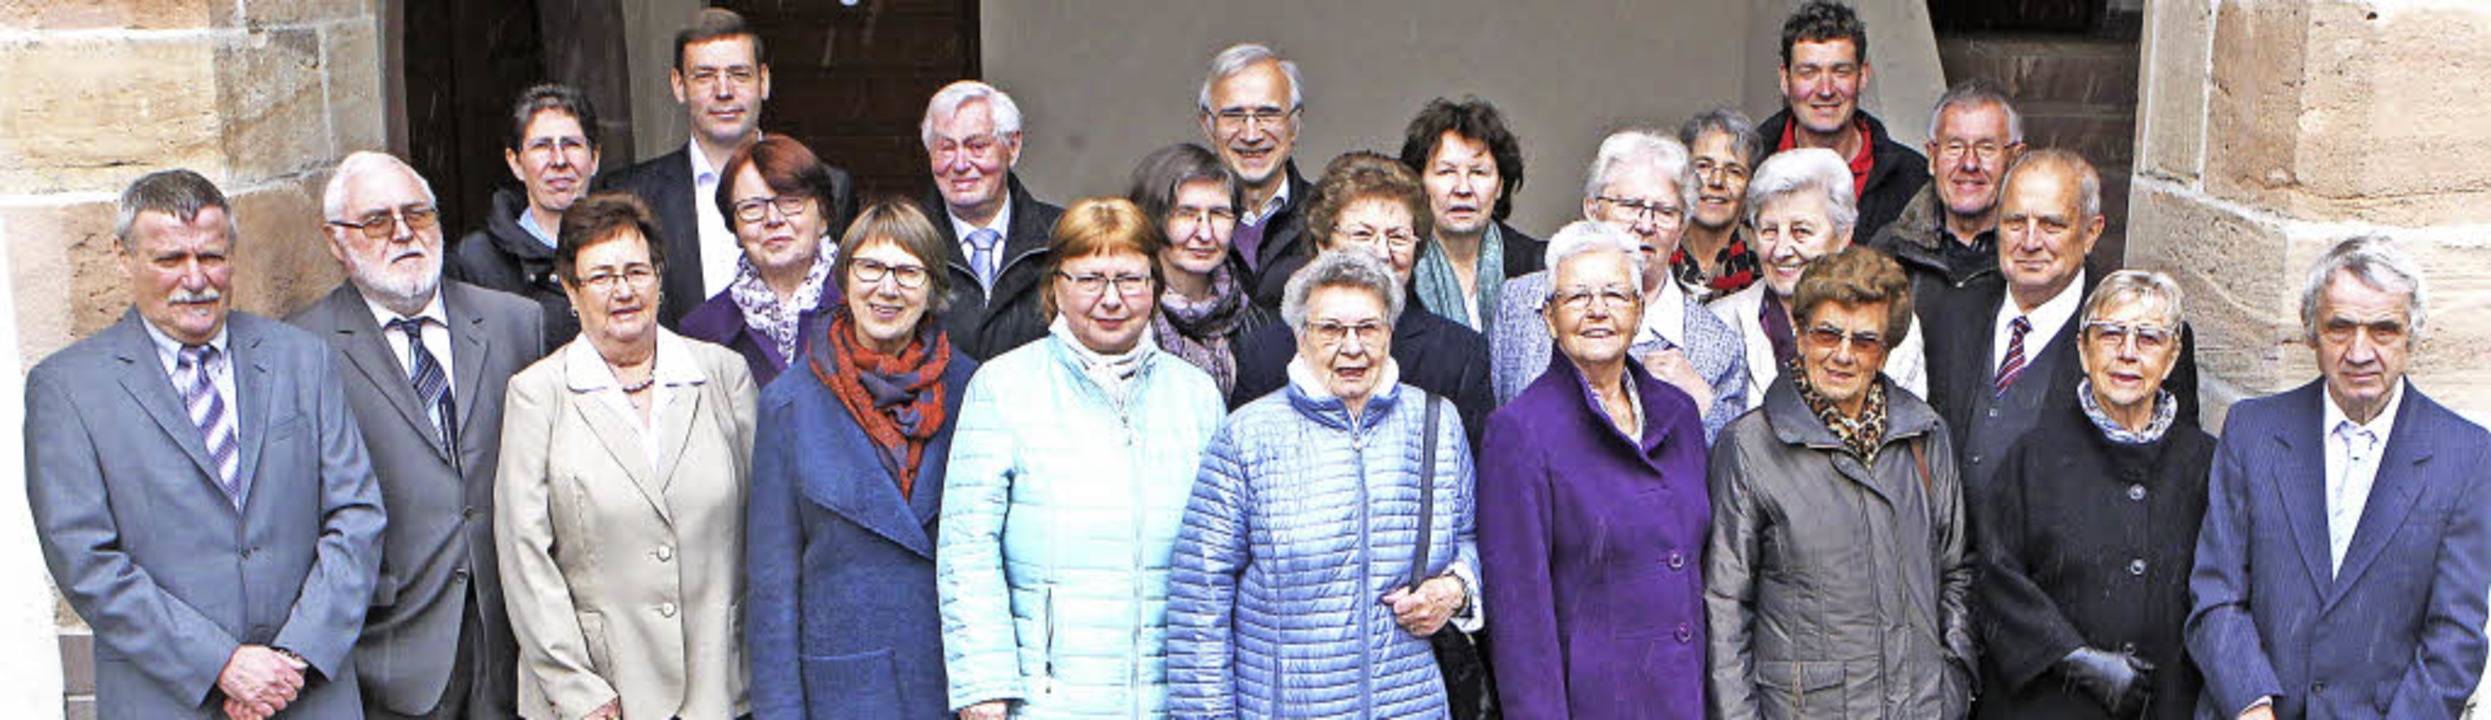 Die aktuellen Mitglieder des Gottenhei...henchors, der 200. Geburtstag feiert.   | Foto: Mario Schöneberg/Privat